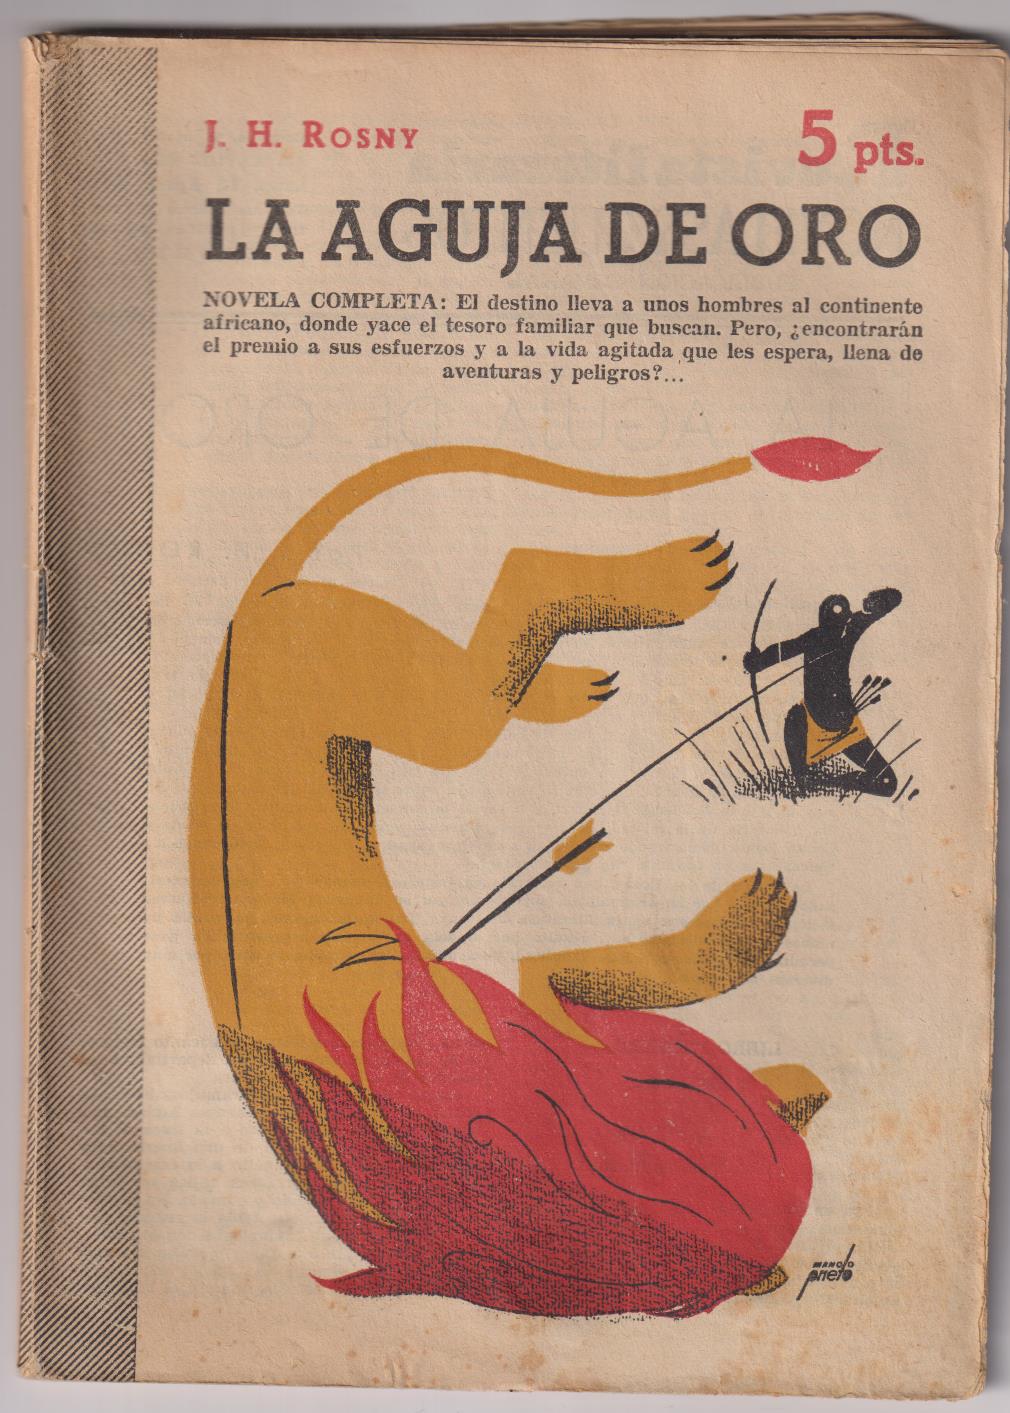 Revista Literaria Novelas y Cuentos nº 1332. La Aguja de Oro por J.H. Rosny. Año 1956